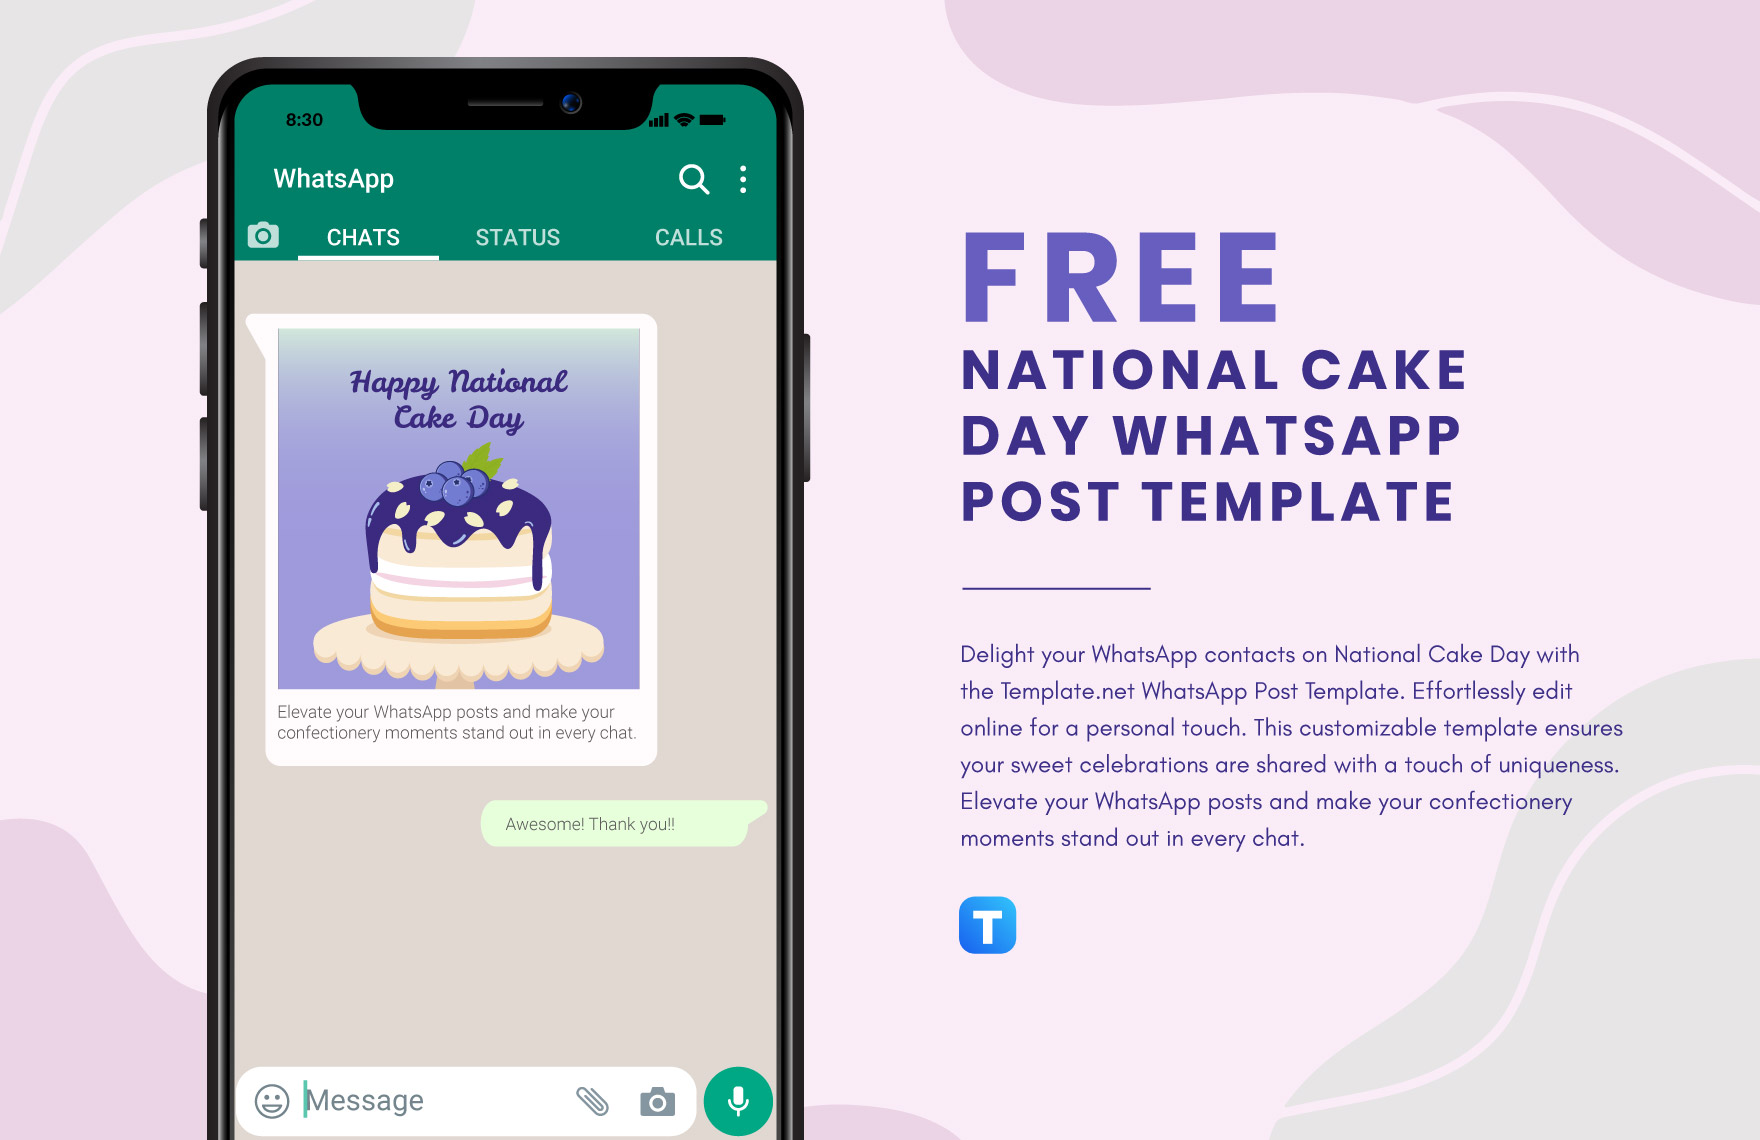 National Cake Day WhatsApp Post